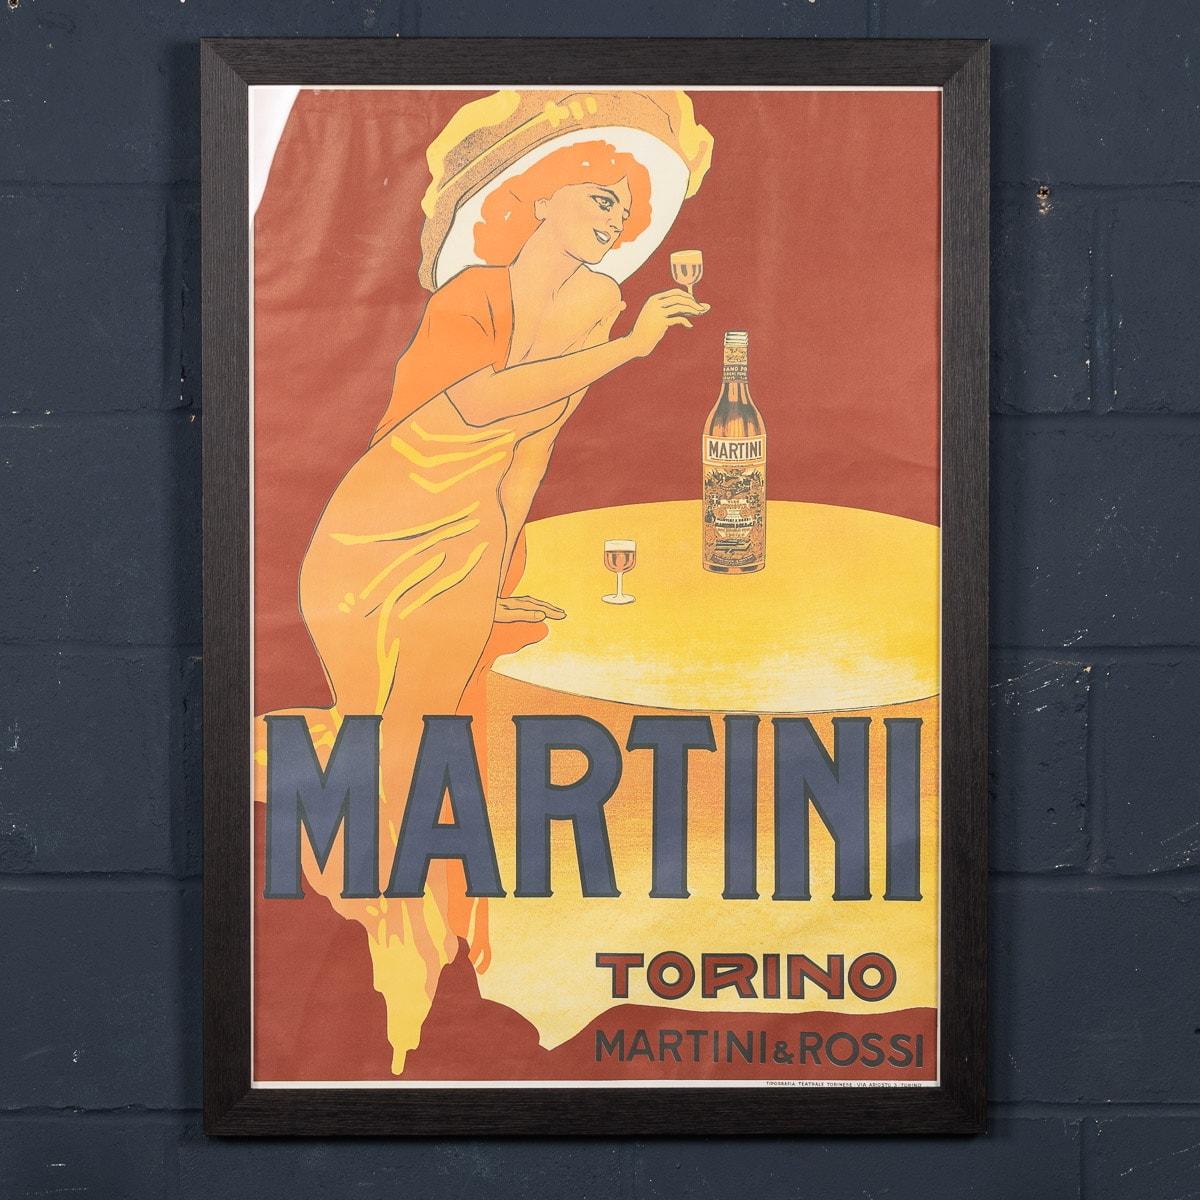 L'affiche représente une femme élégante et bien habillée, vêtue d'une longue robe et d'un grand chapeau. Elle tient un verre de Martini pour porter un toast à son compagnon qui ne fait pas partie de l'affiche. La bouteille de Martini, dont le Label